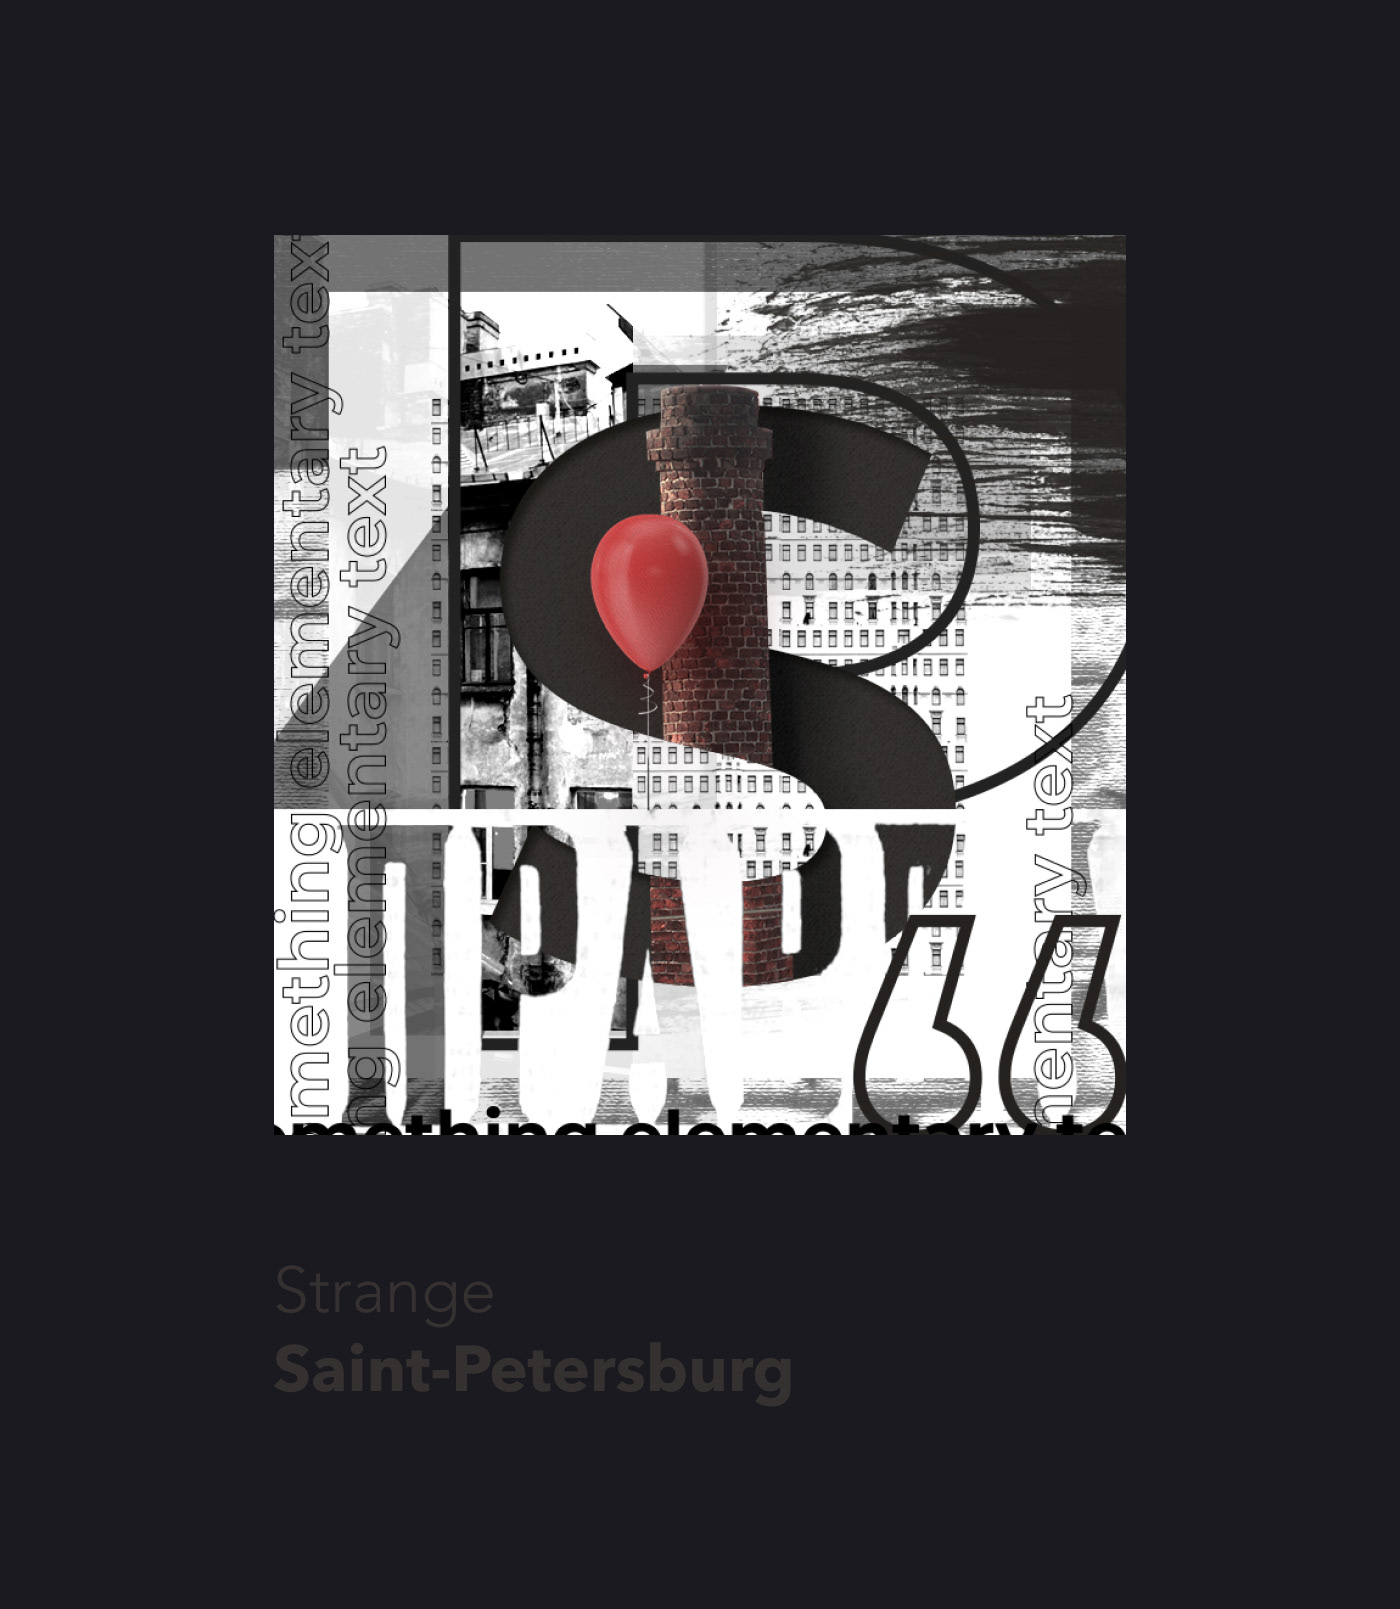 питер spb petersburg collage Typografic typographyc photospb photocollage monochrome revolution